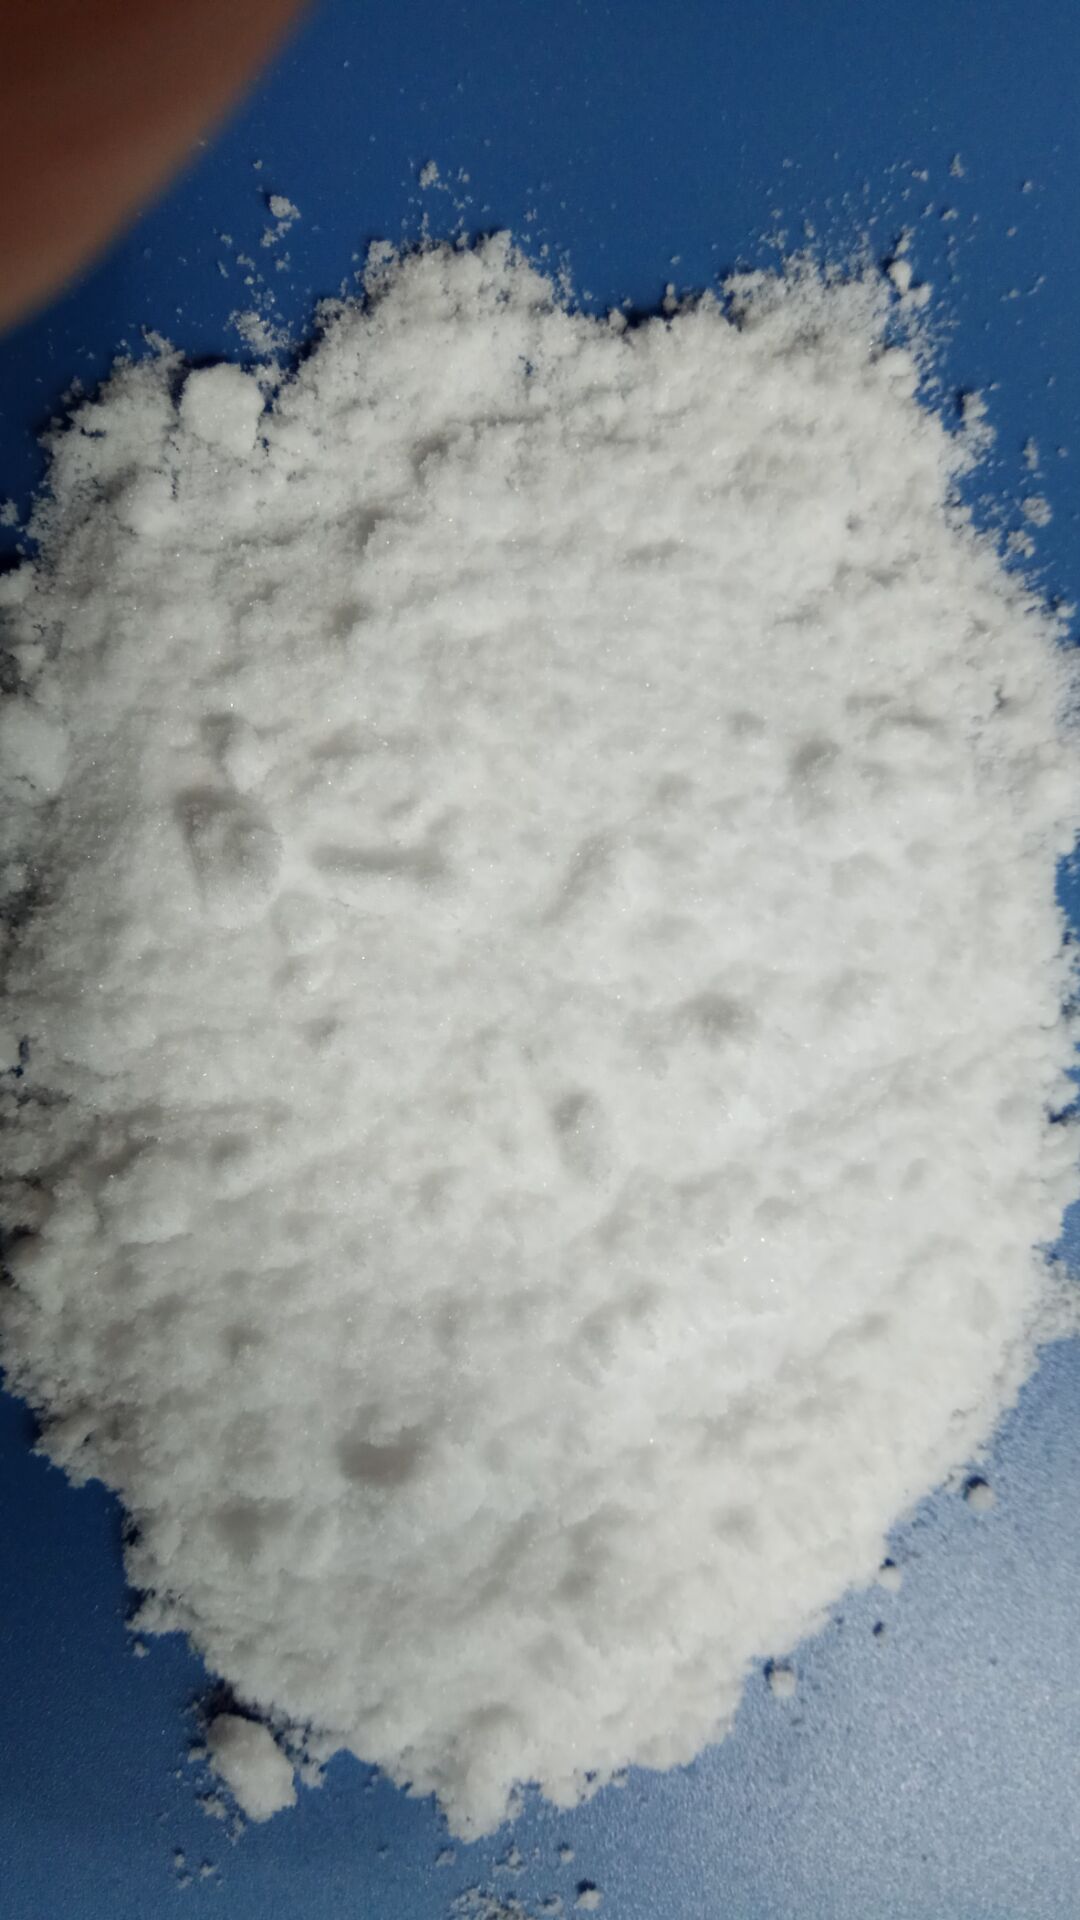 醋酸铵,Ammonium Acetate